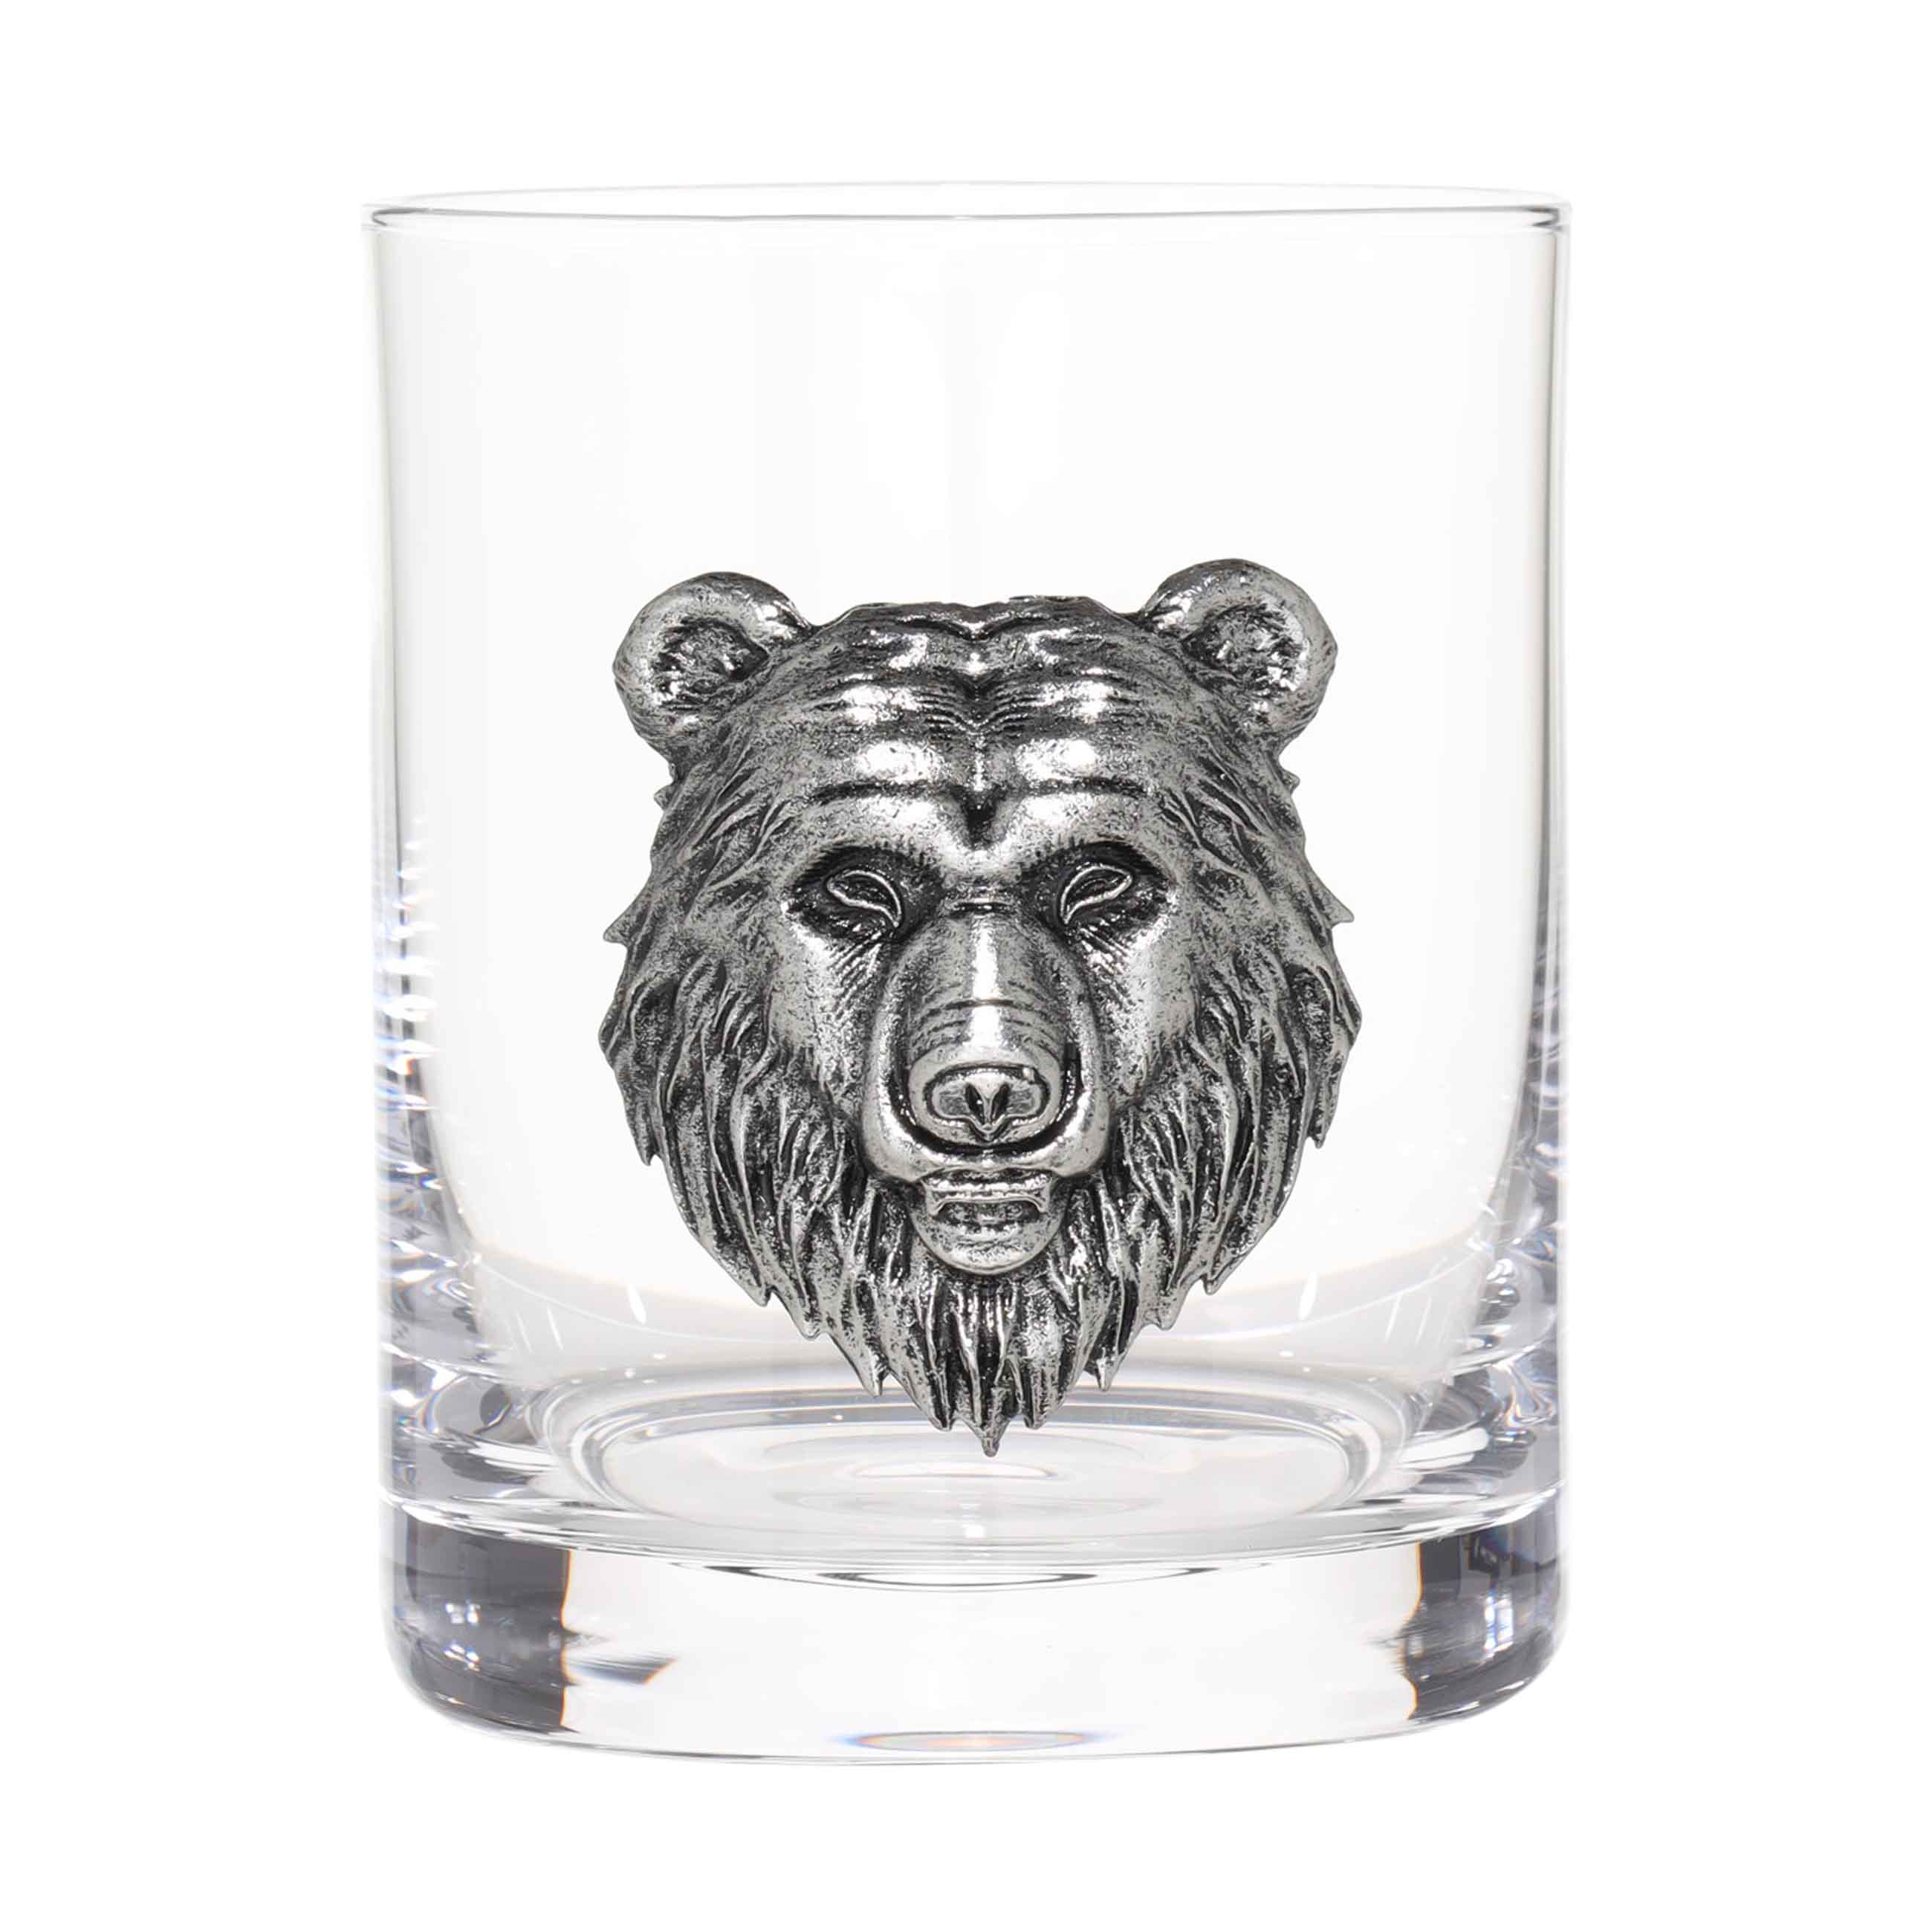 Стакан для виски, 340 мл, стекло/металл, серебристый, Медведь, Lux elements изображение № 2